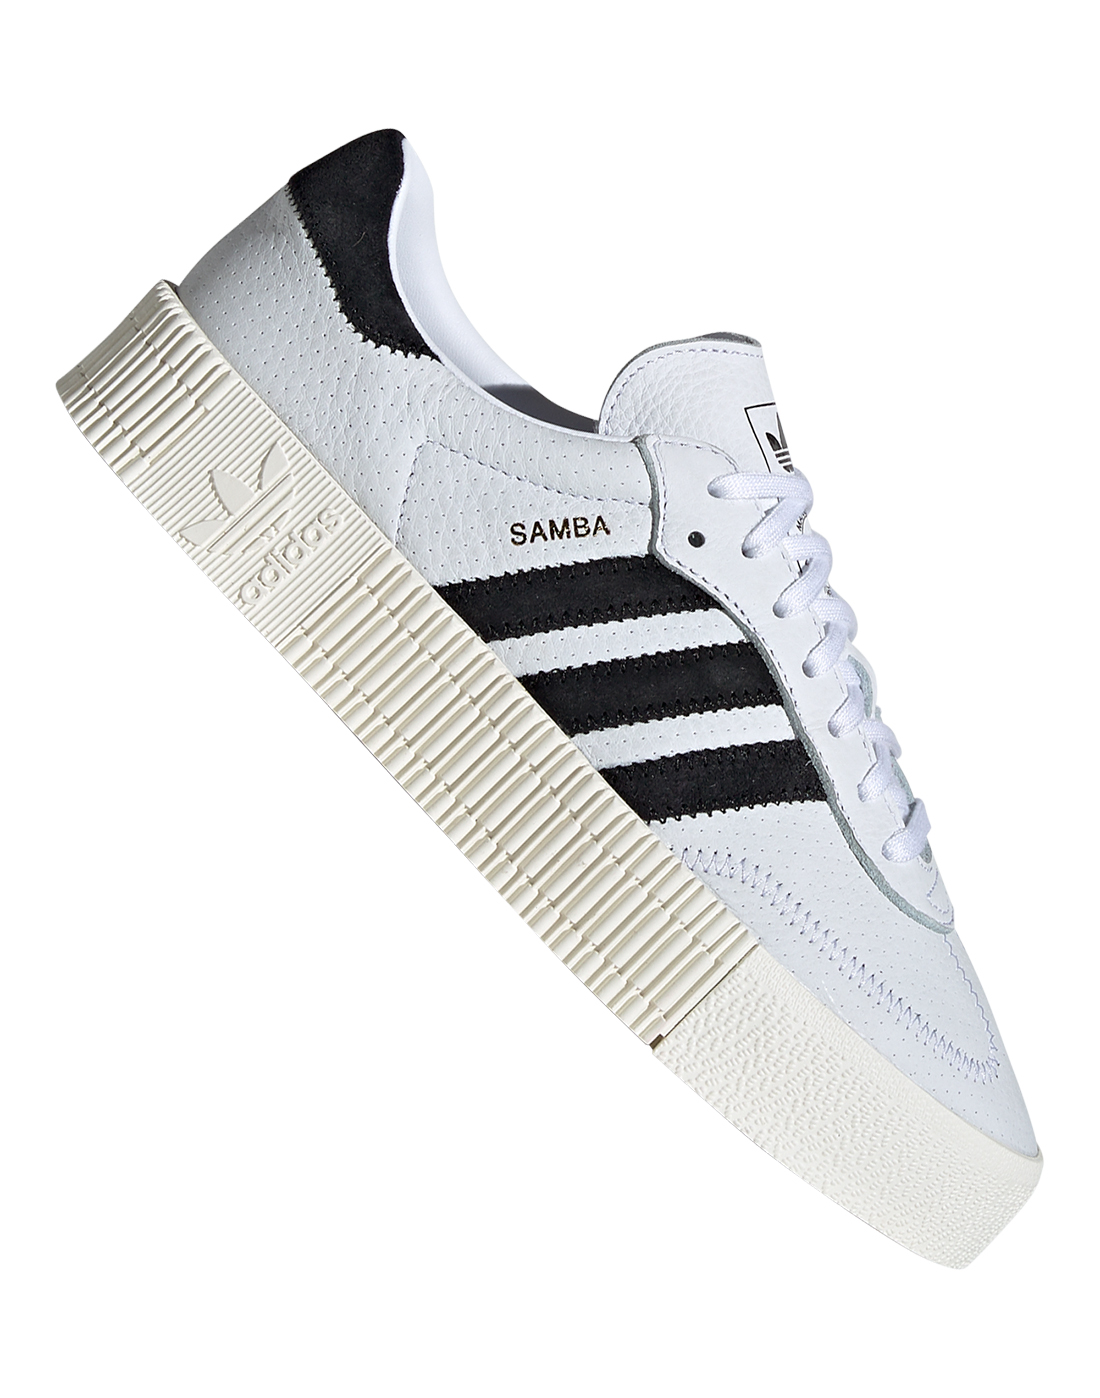 Адидас с белой подошвой. Adidas Samba White. Adidas Originals Samba Rose. Адидас Самба с белой подошвой. Adidas Samba белые.